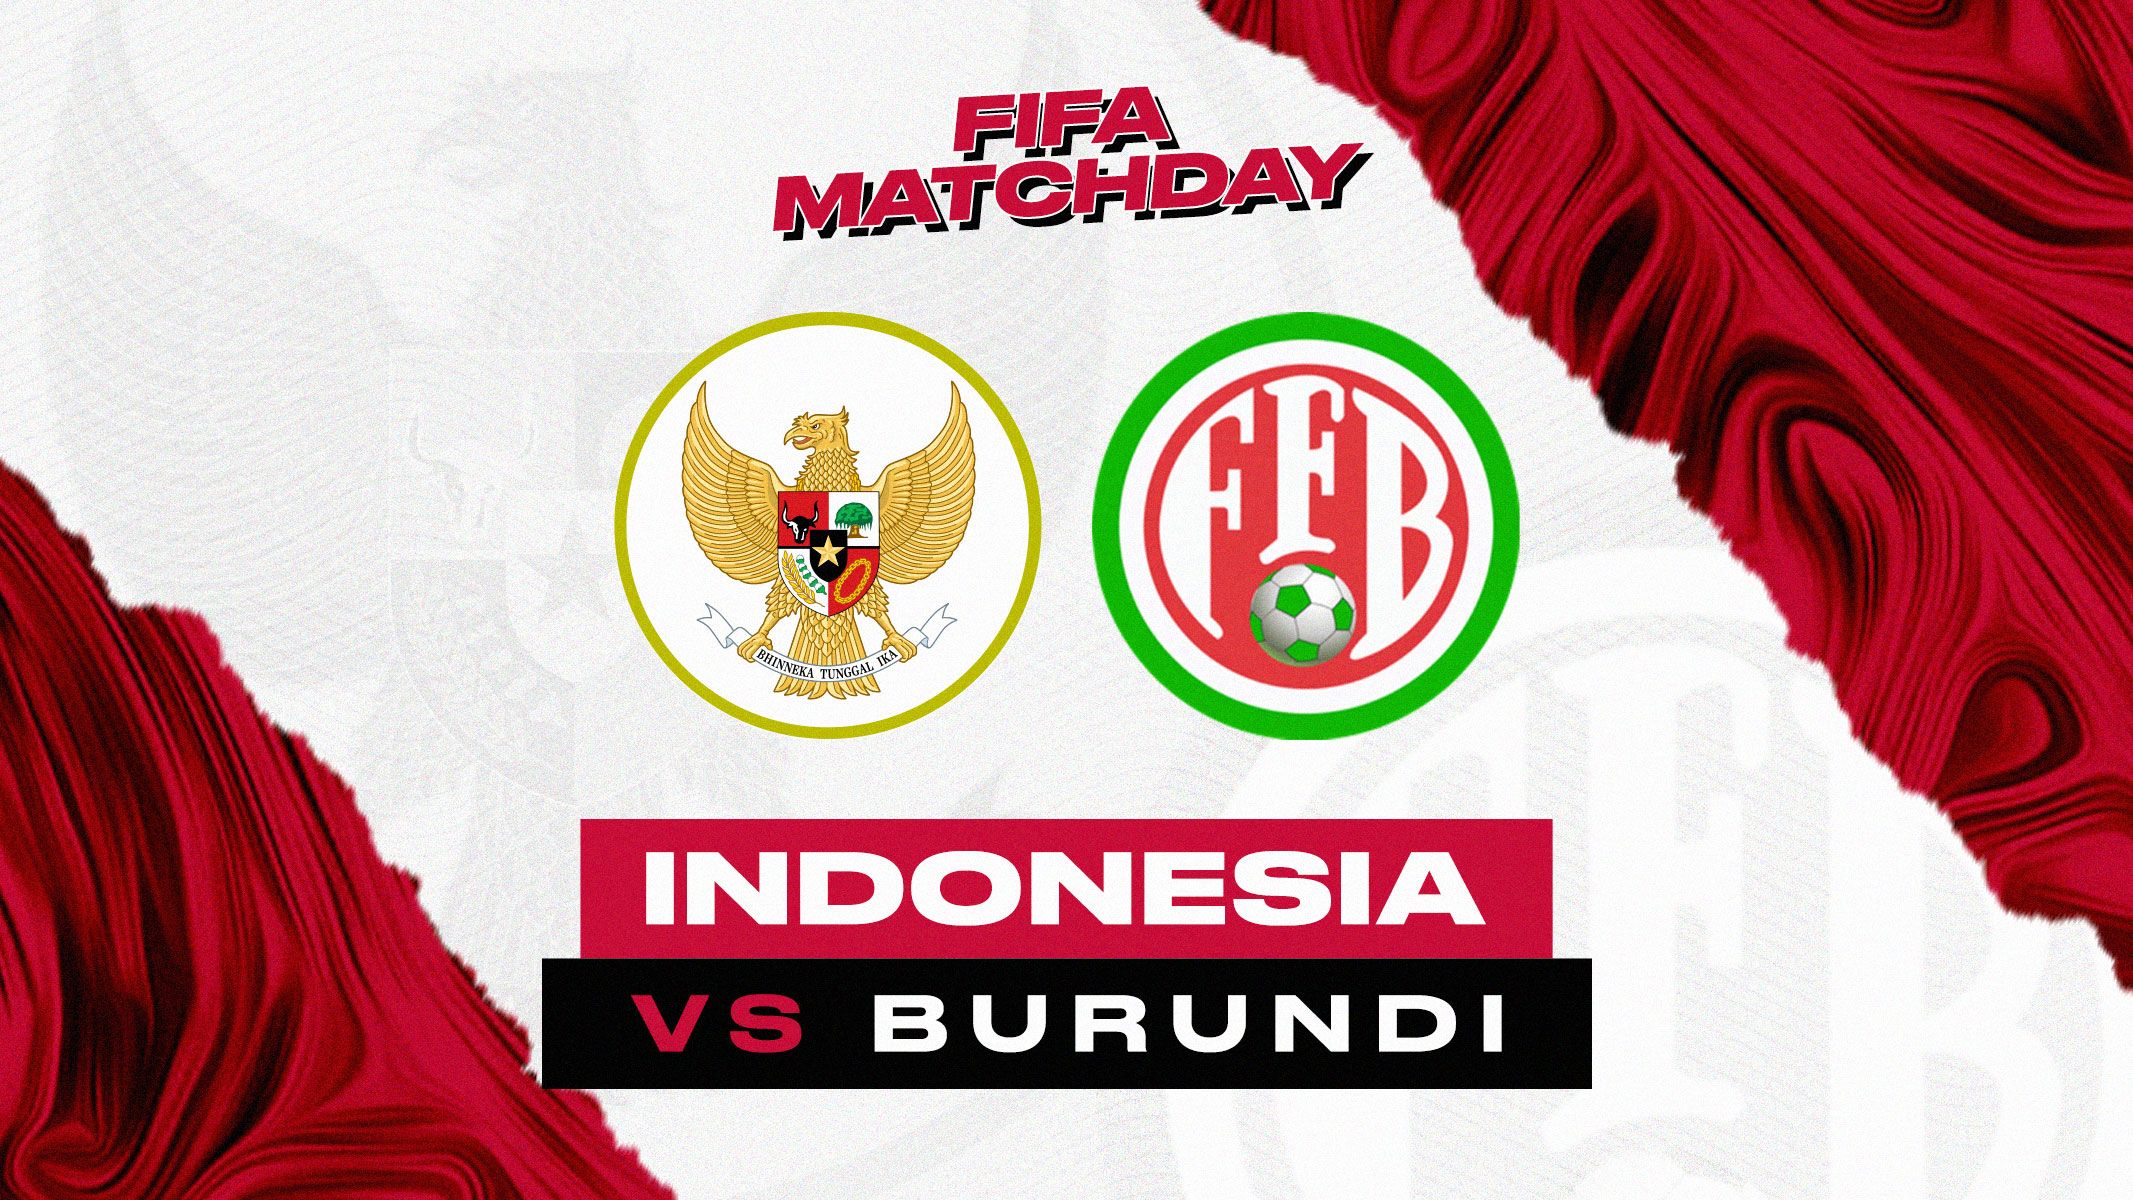 Cover FIFA Matchday Indonesia vs Burundi.